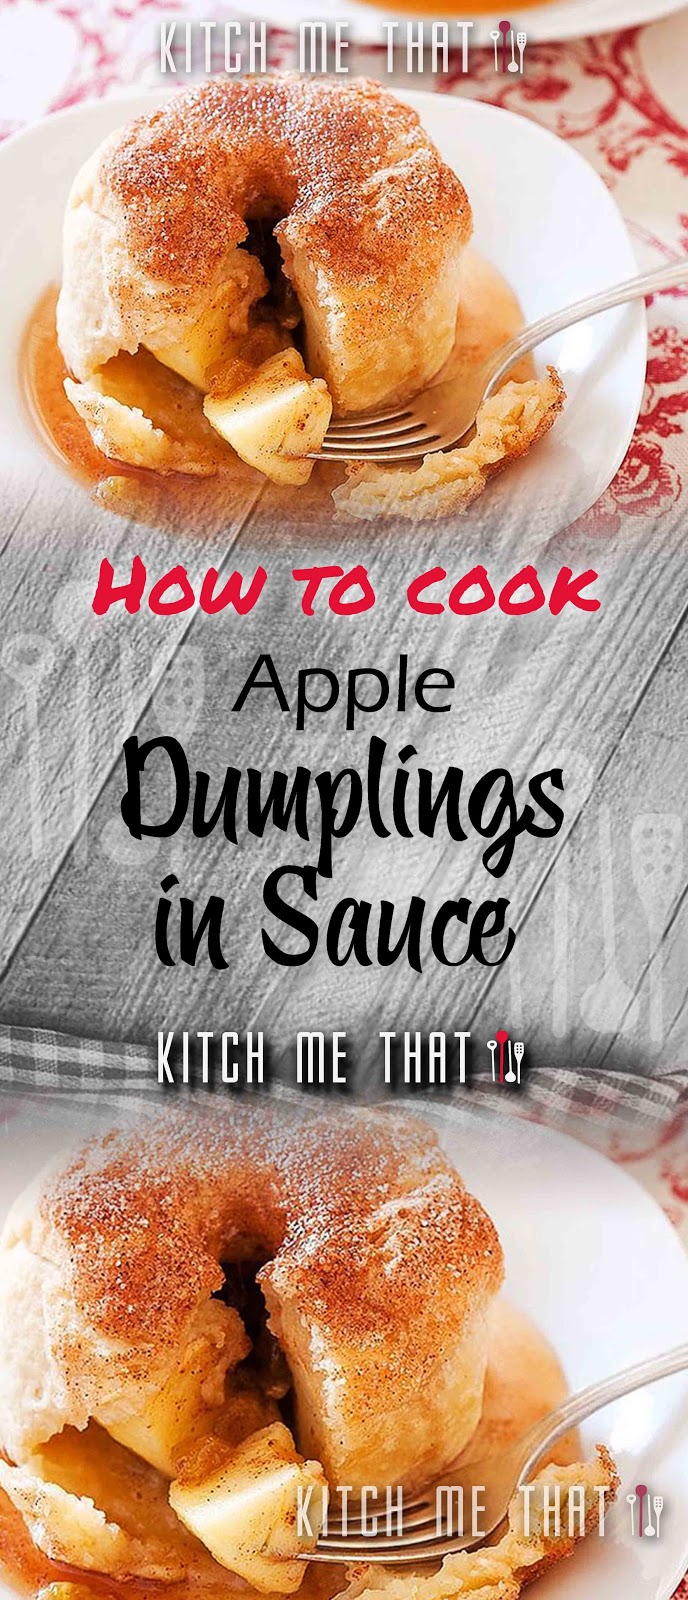 Apple Dumplings in Sauce